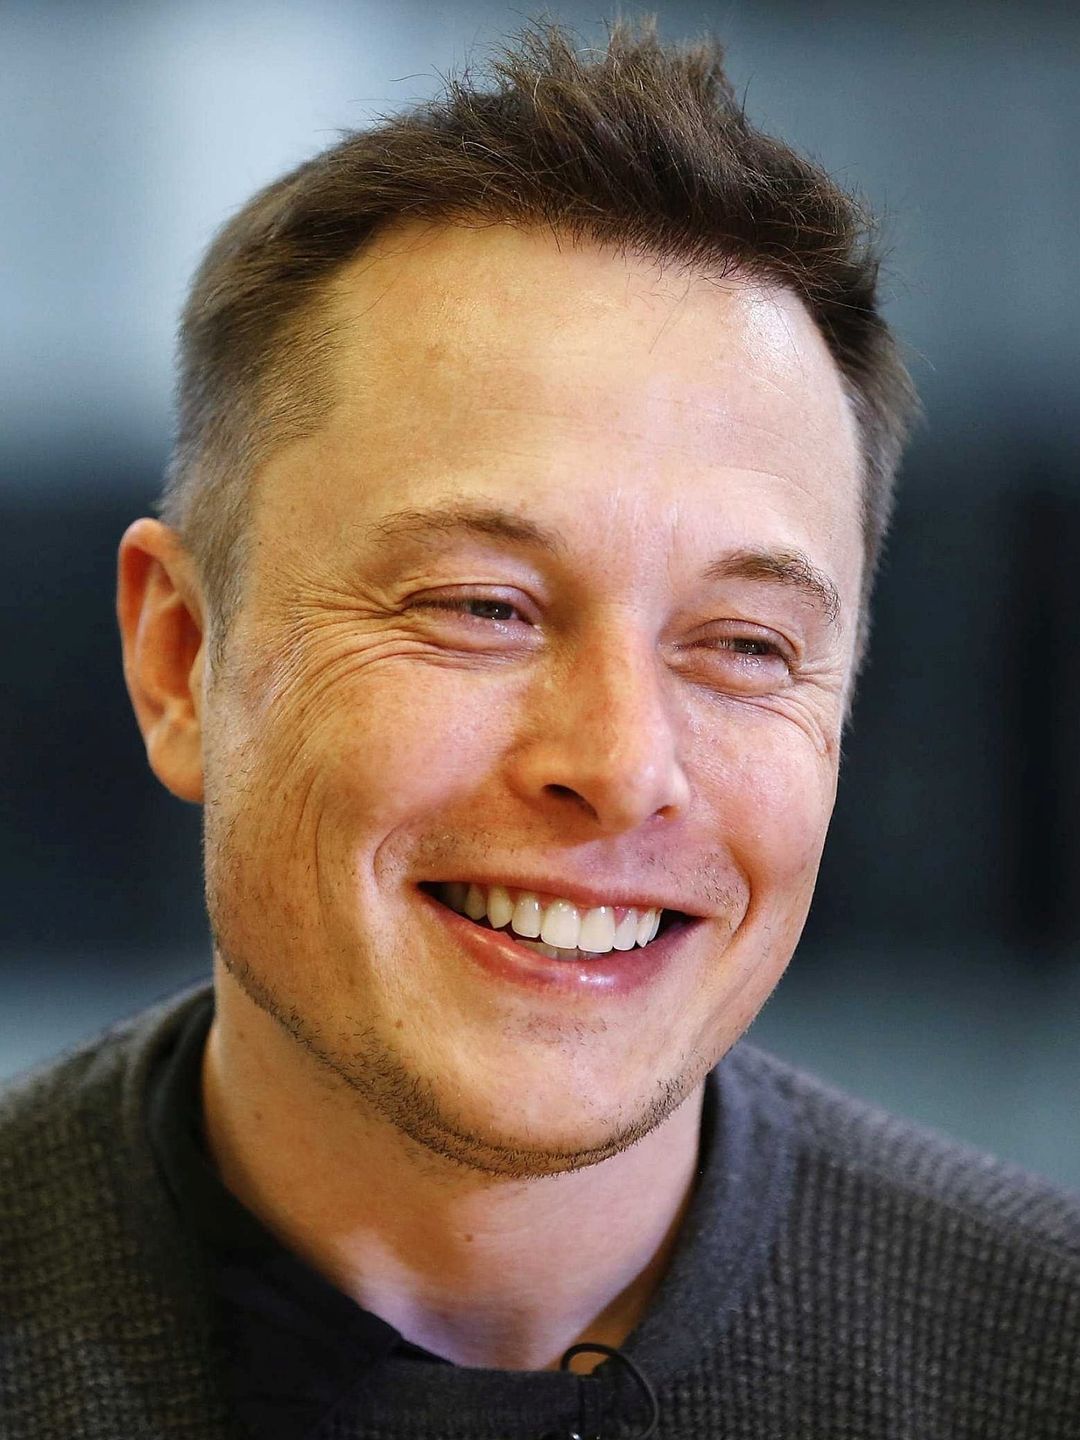 Elon Musk appearance